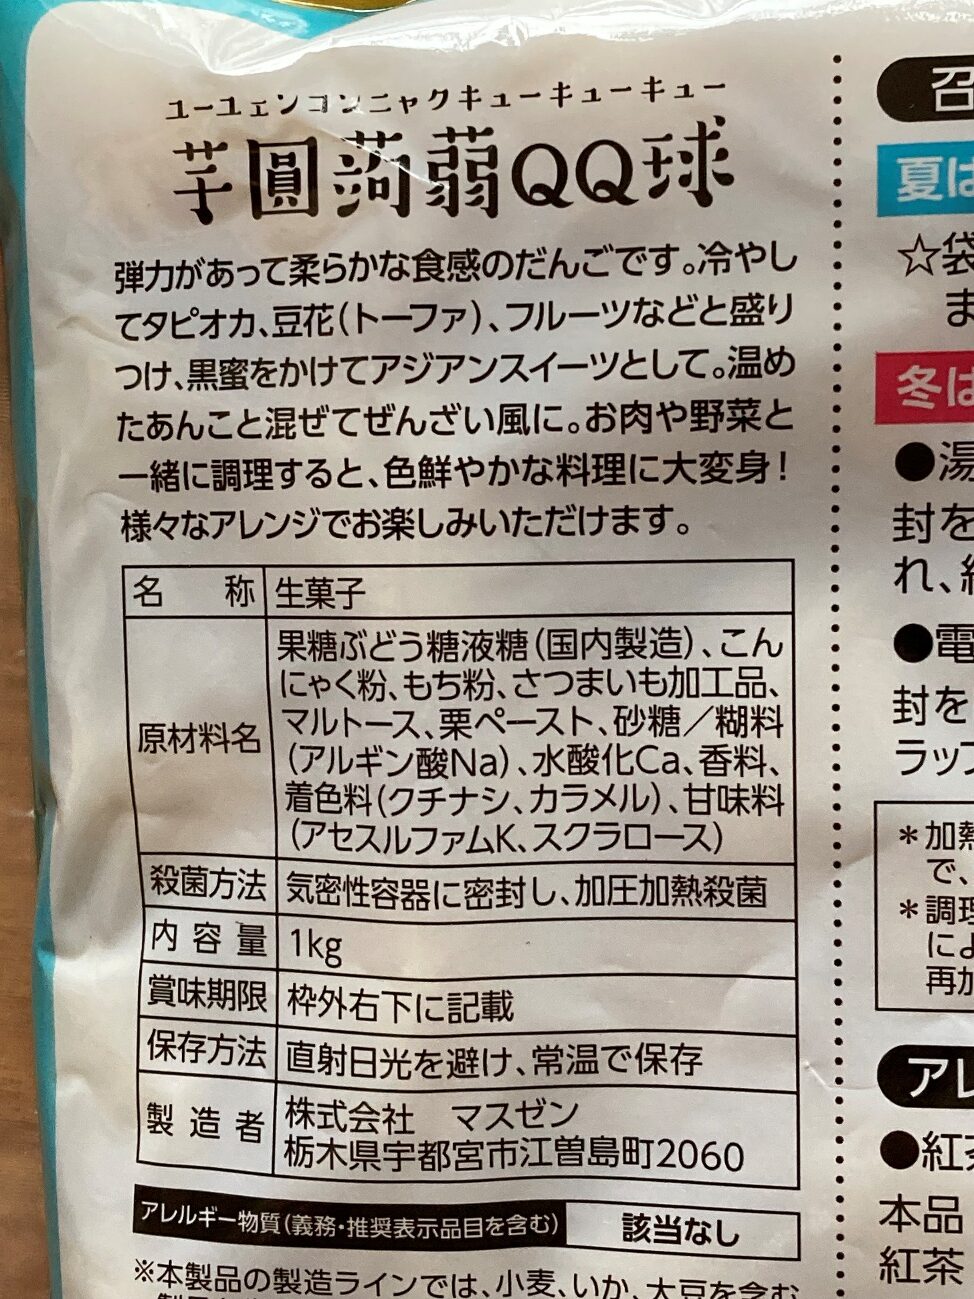 業務スーパーの芋圓蒟蒻QQ球パッケージにある原材料名と製造者の表記